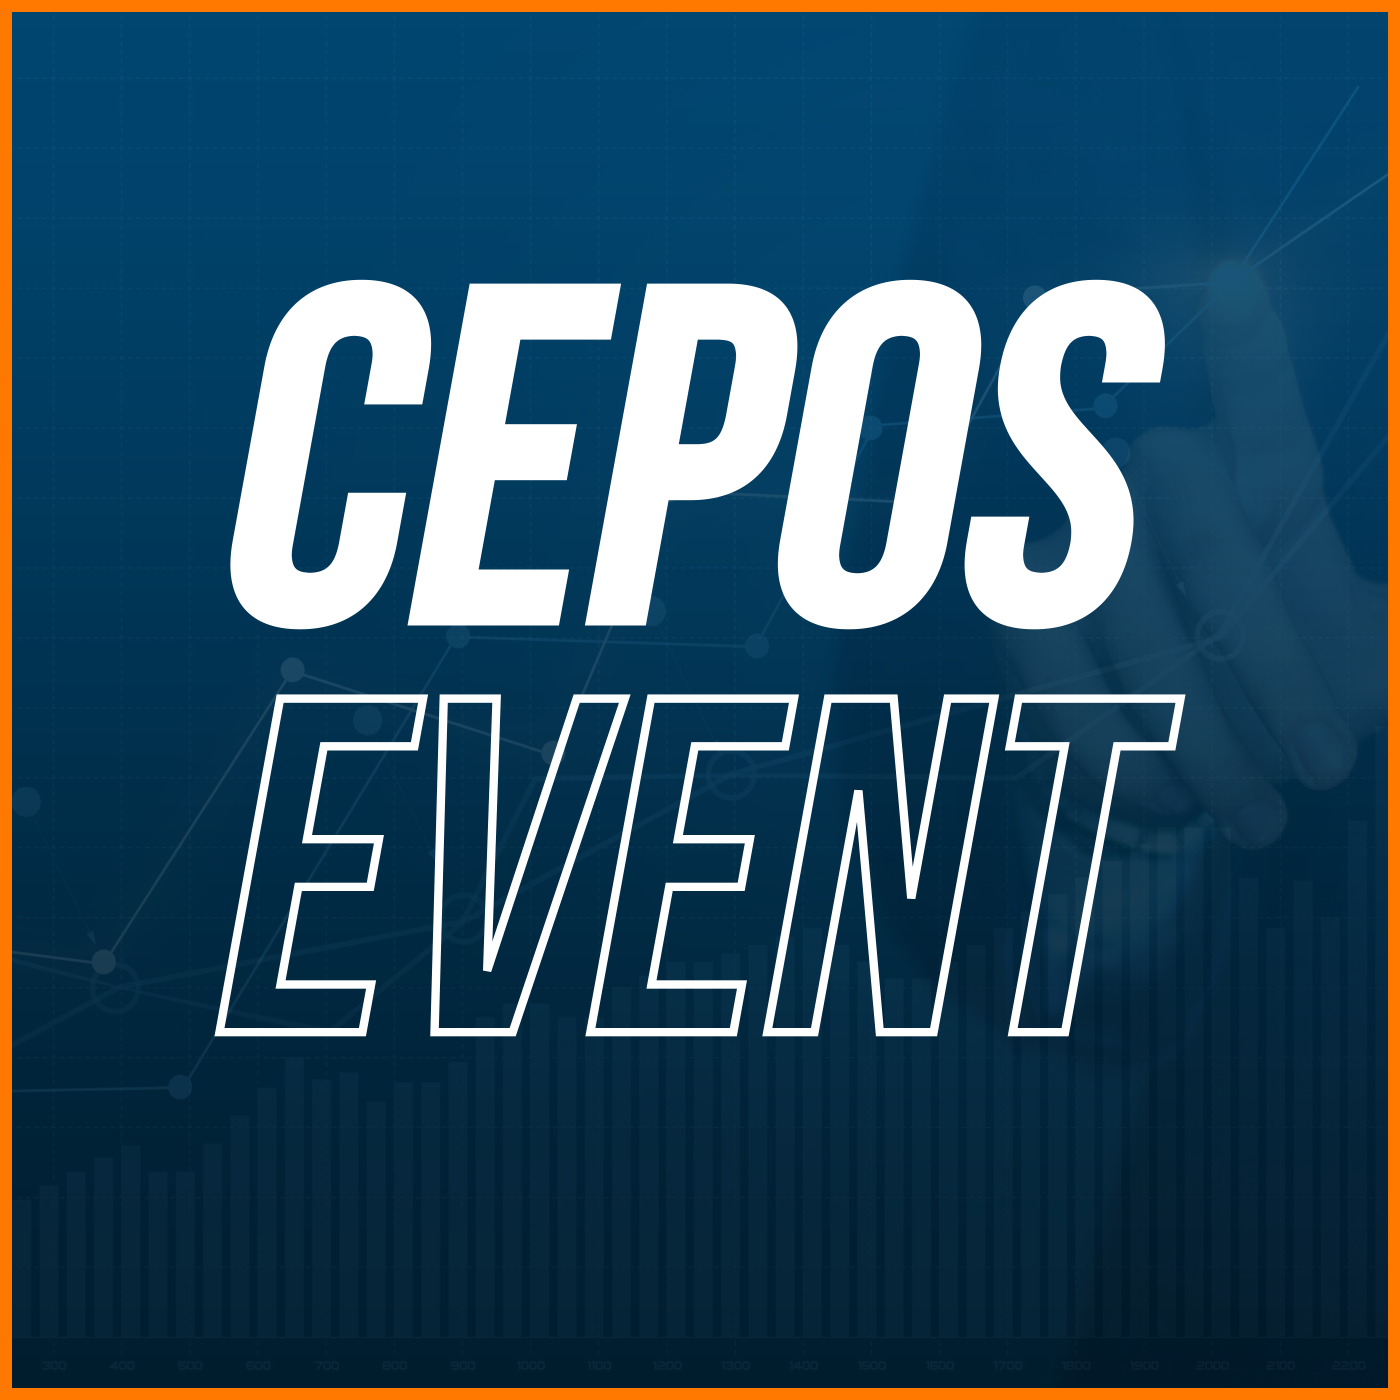 Show artwork for CEPOS Event